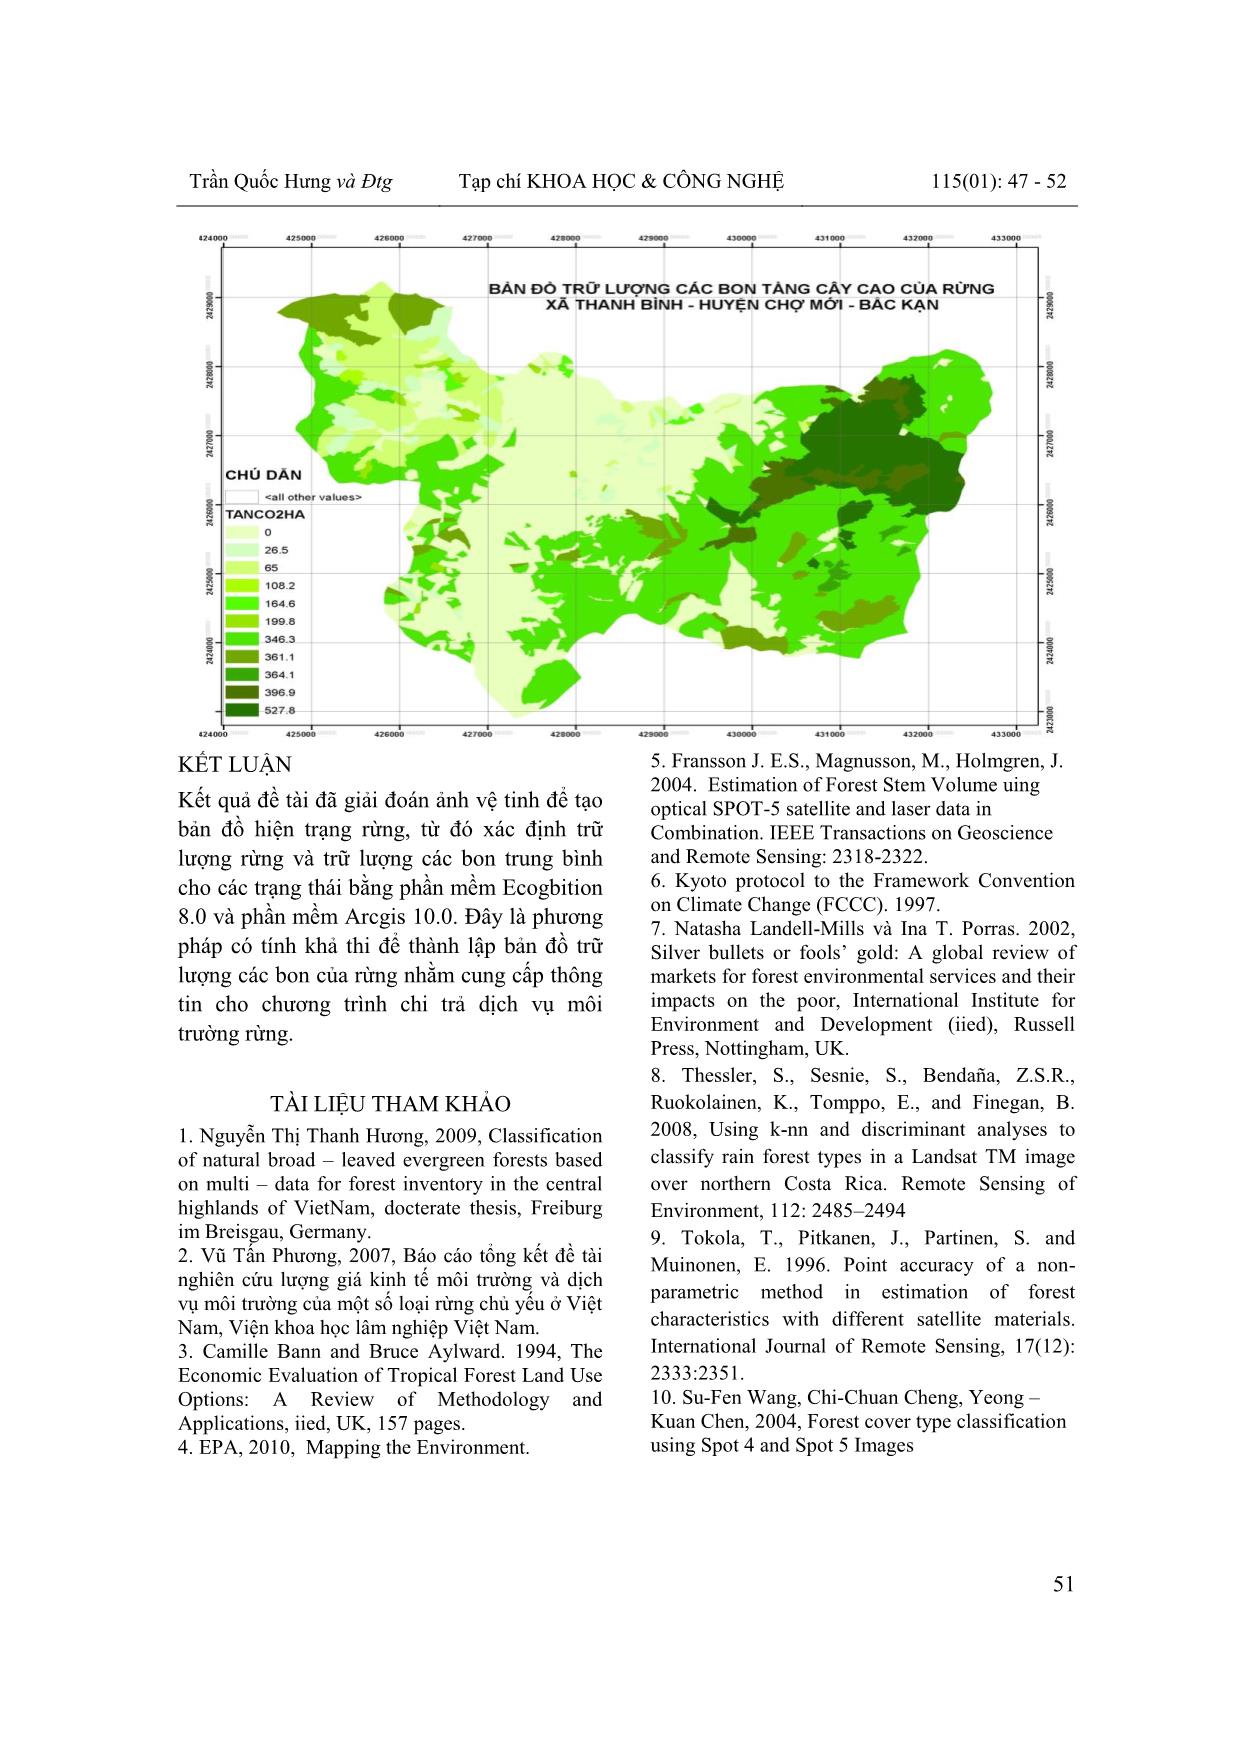 Xây dựng cơ sở dữ liệu chi trả dịch vụ môi trường rừng bằng bản đồ trữ lượng các bon cây tầng cao trên các trạng thái rừng tại xã Thanh Bình – huyện Chợ Mới – tỉnh Bắc Kạn trang 5